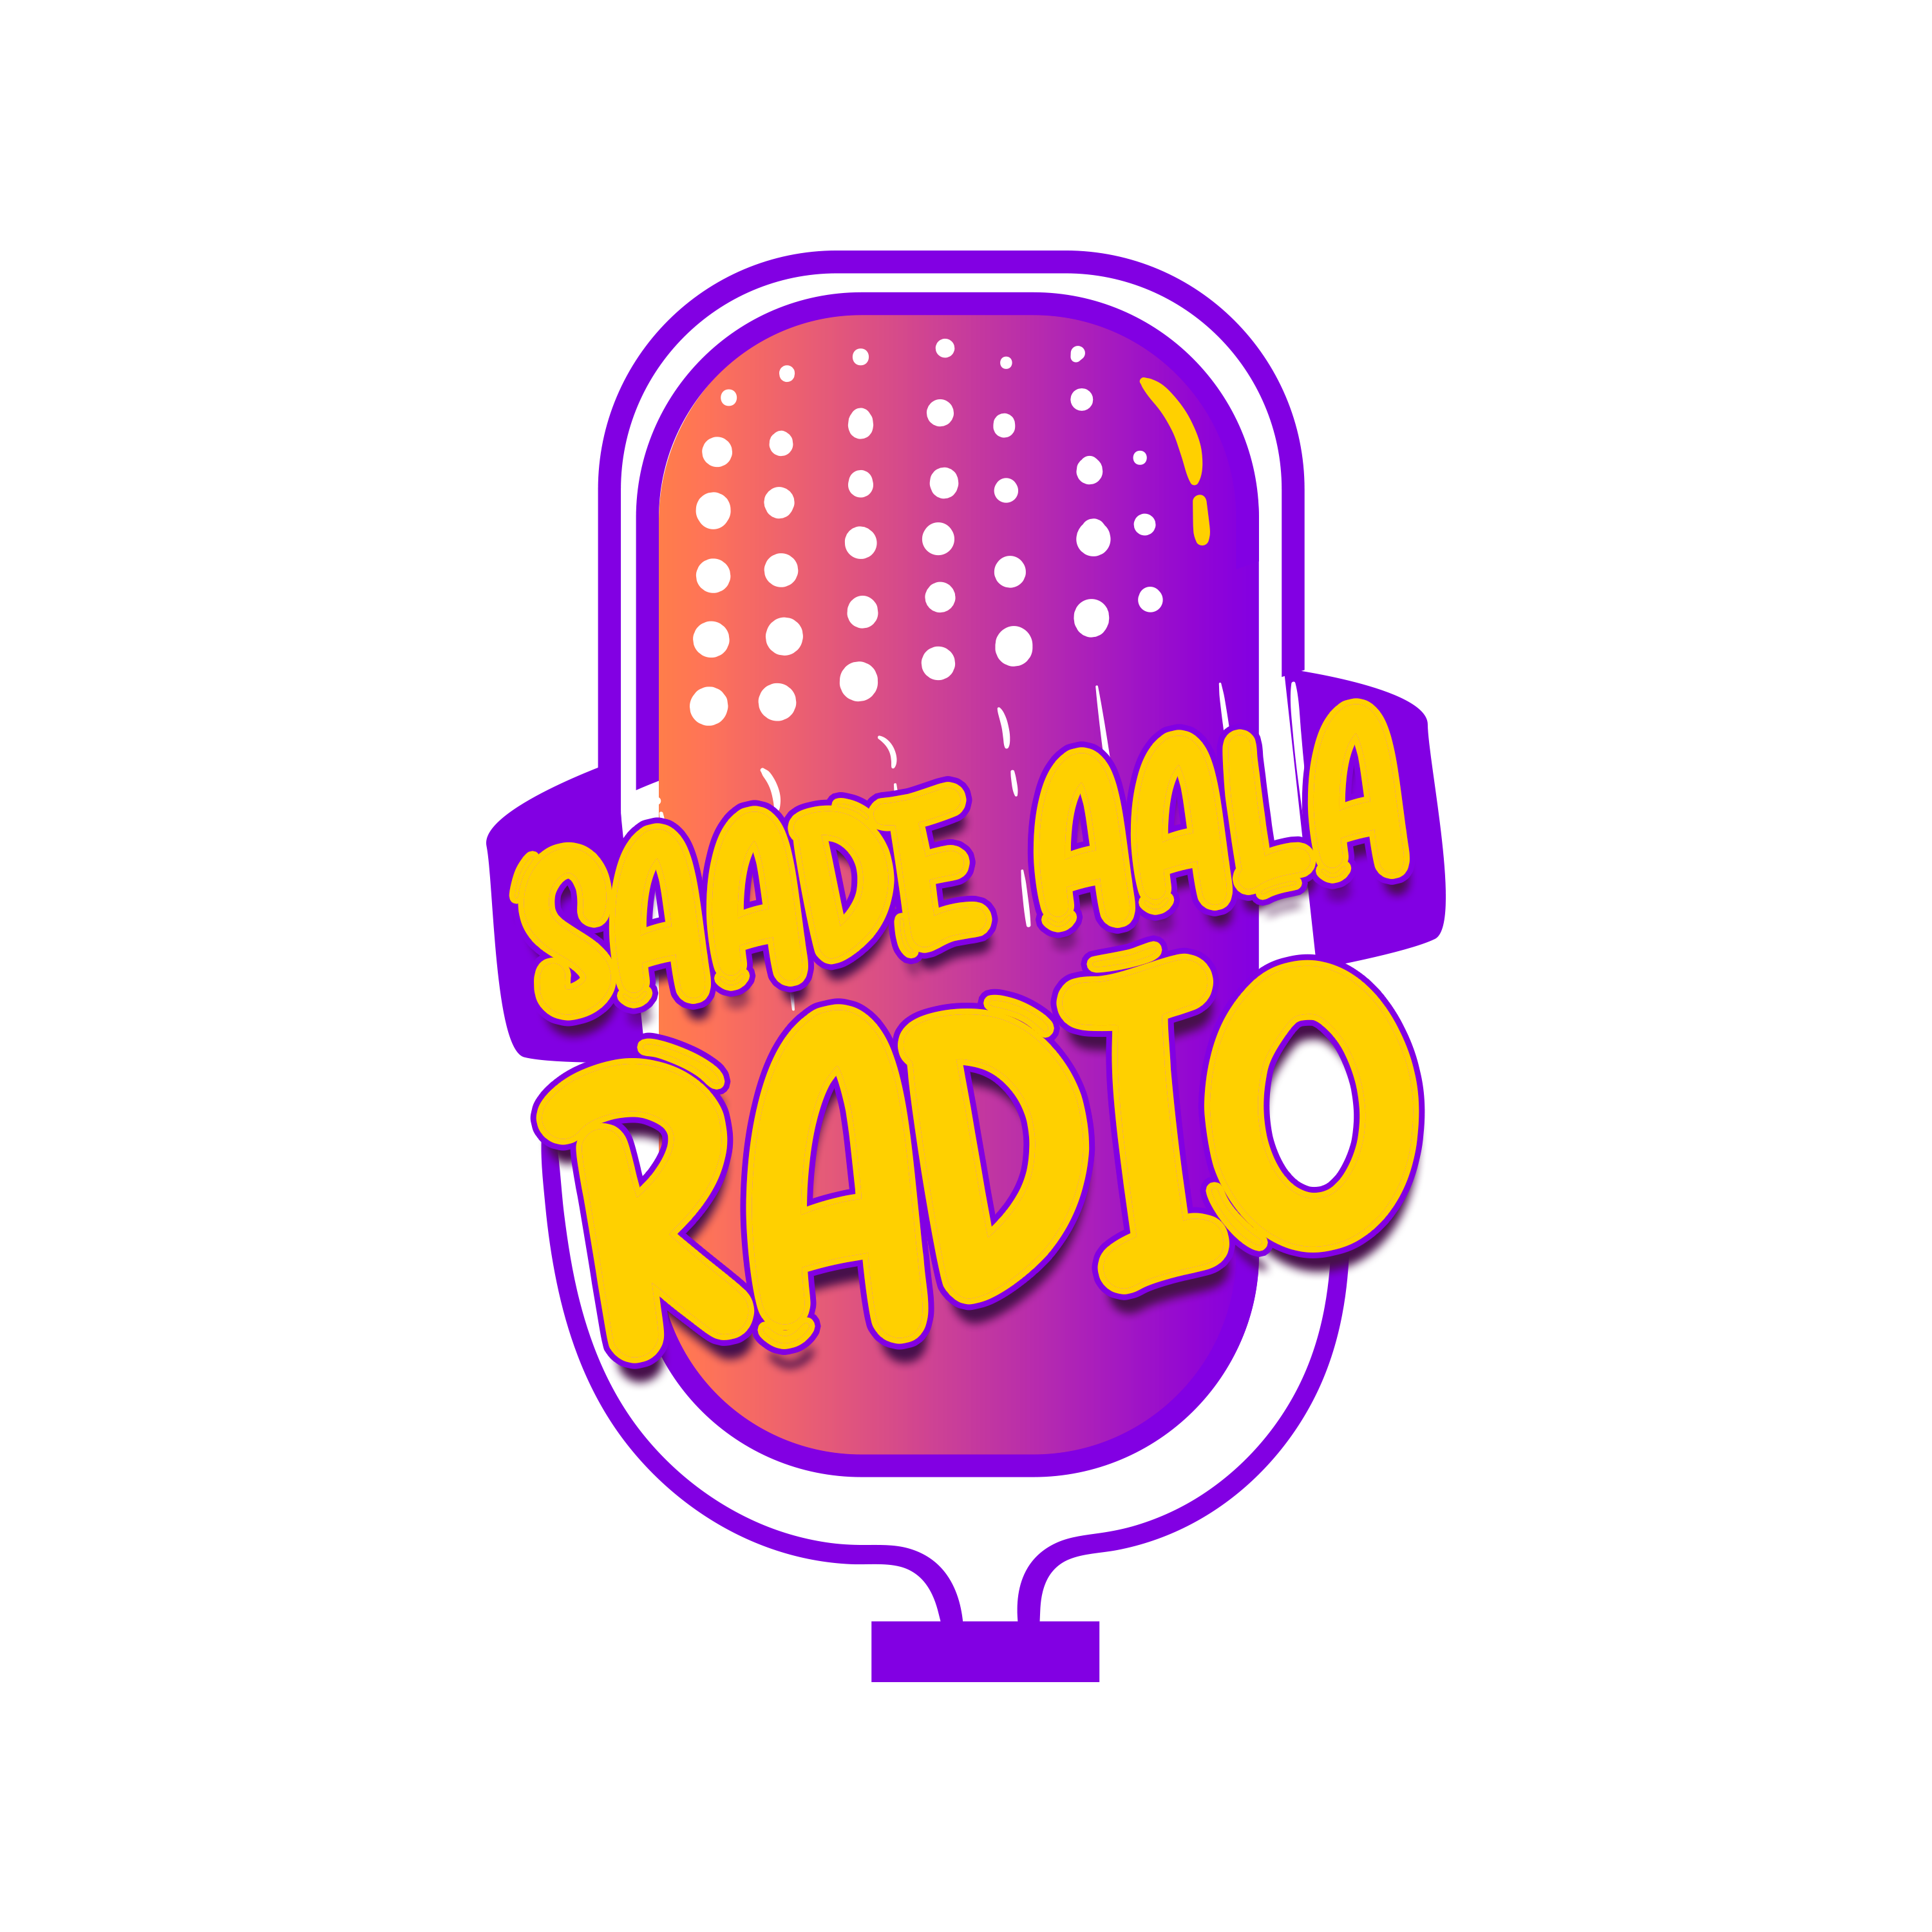 saade aala radio Logo